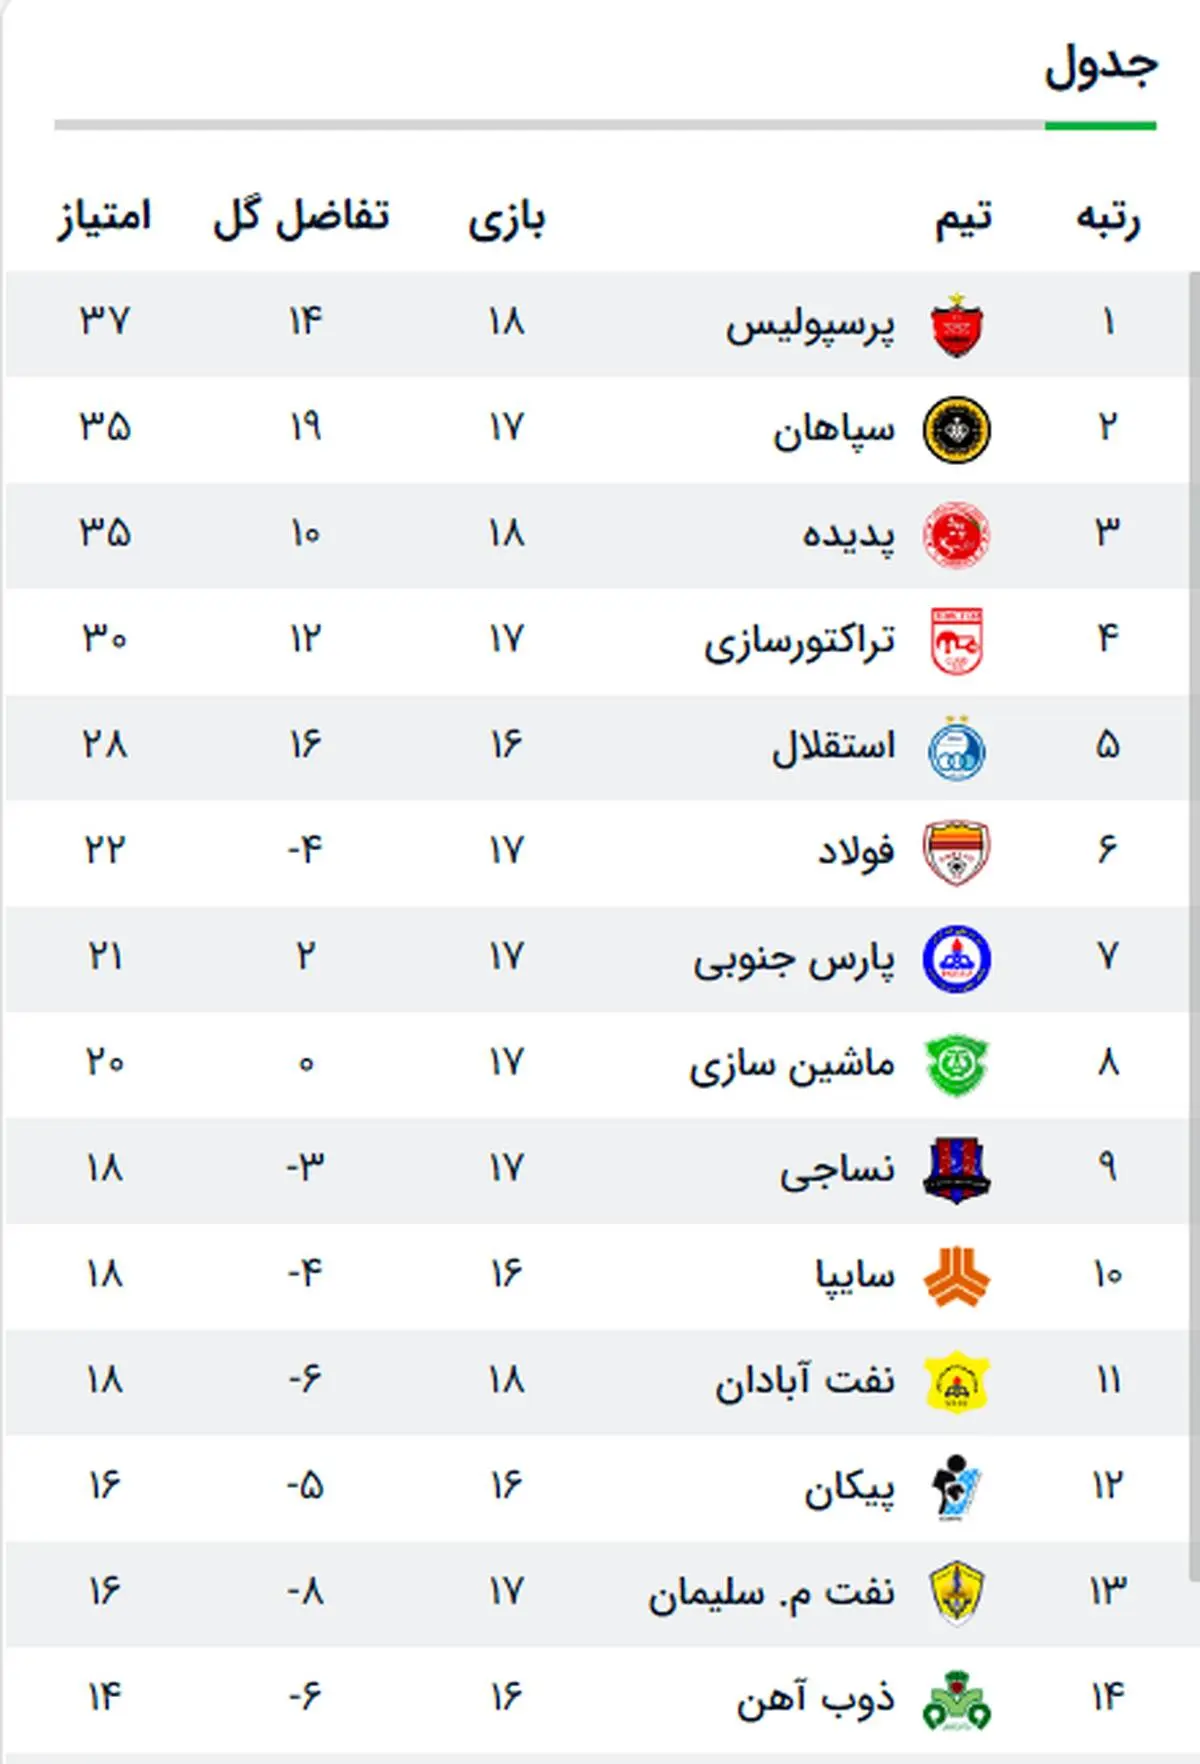 جدول مسابقات لیگ برتر پس از پایان مسابقات امروز